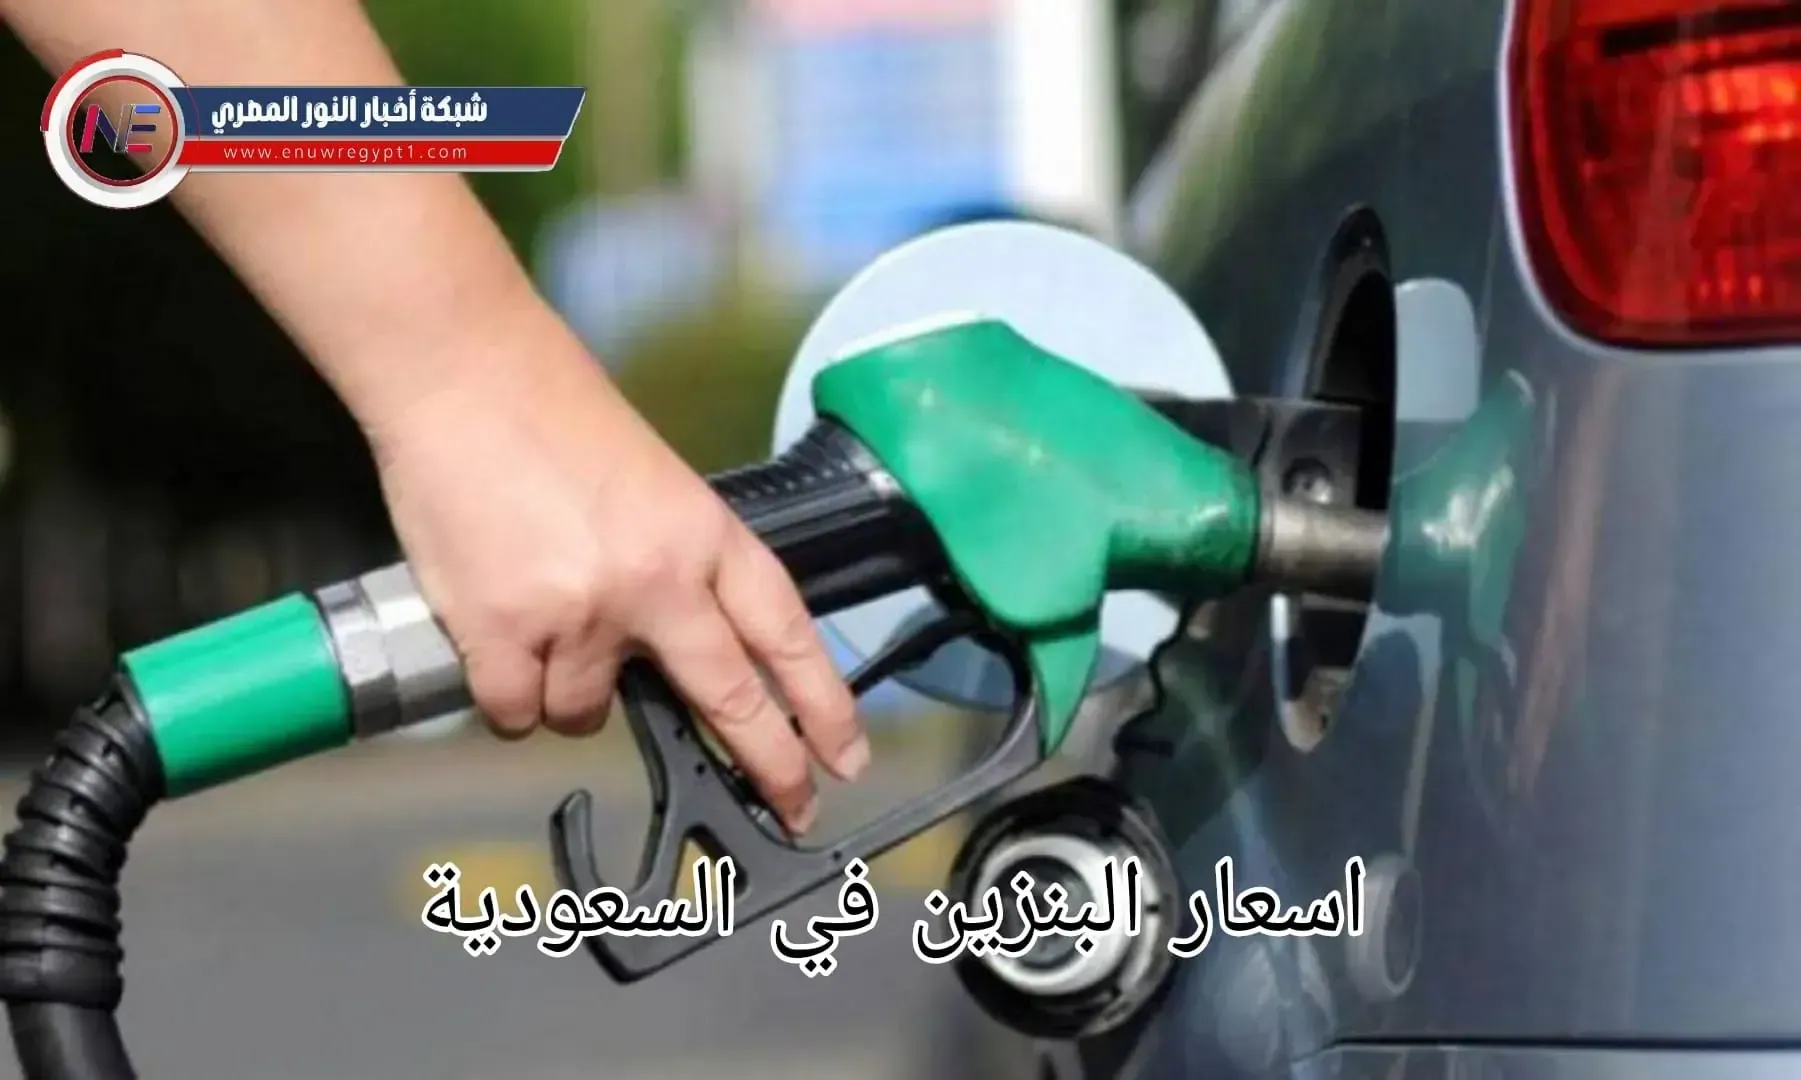 أسعار البنزين الجديدة المعلن عنها لشركة ارامكو عن شهر مارس 2023 في السعودية - سعر البنزين لشهر مارس 2023